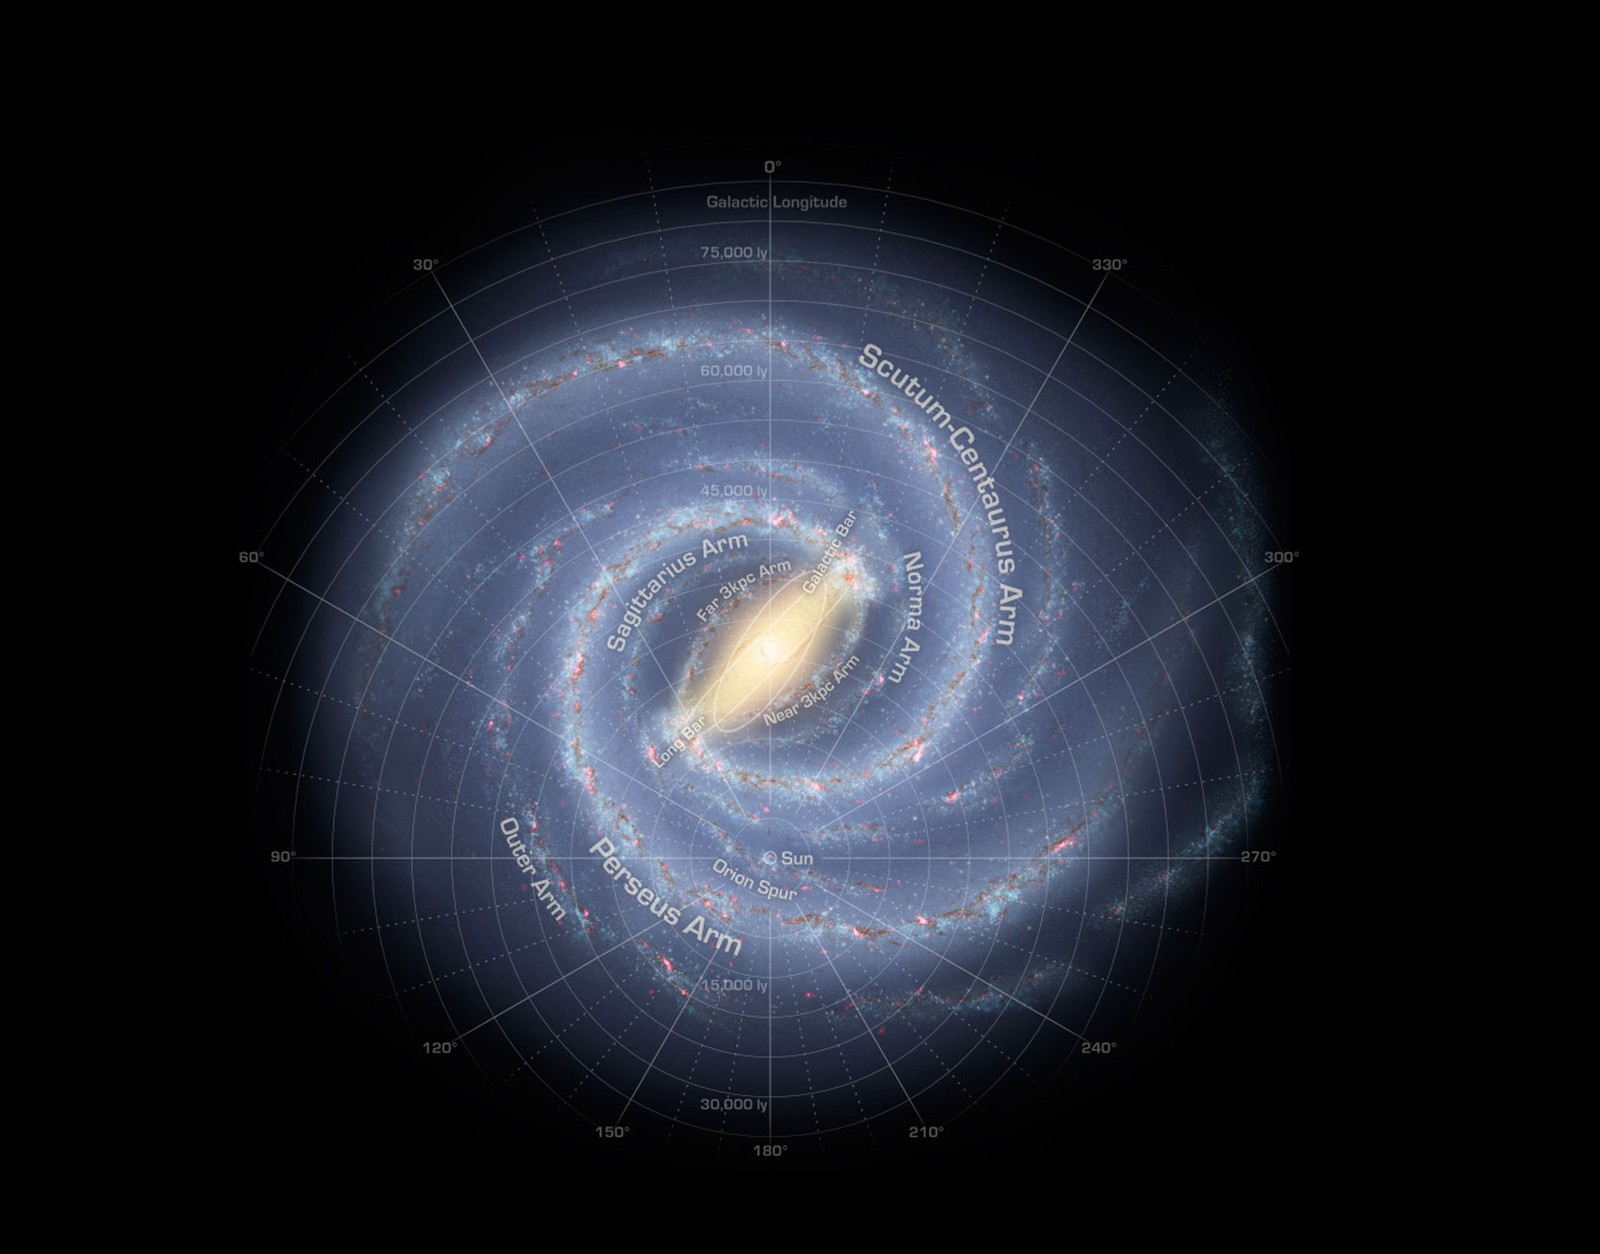 Representação gráfica de nossa galáxia, a Via Láctea, que é organizada em braçios espirais formados por estrelas gigantes que iluminam os gases e poeiras interestelares (Foto:  NASA/Adler/U. Chicago/Wesleyan/JPL-Caltech)